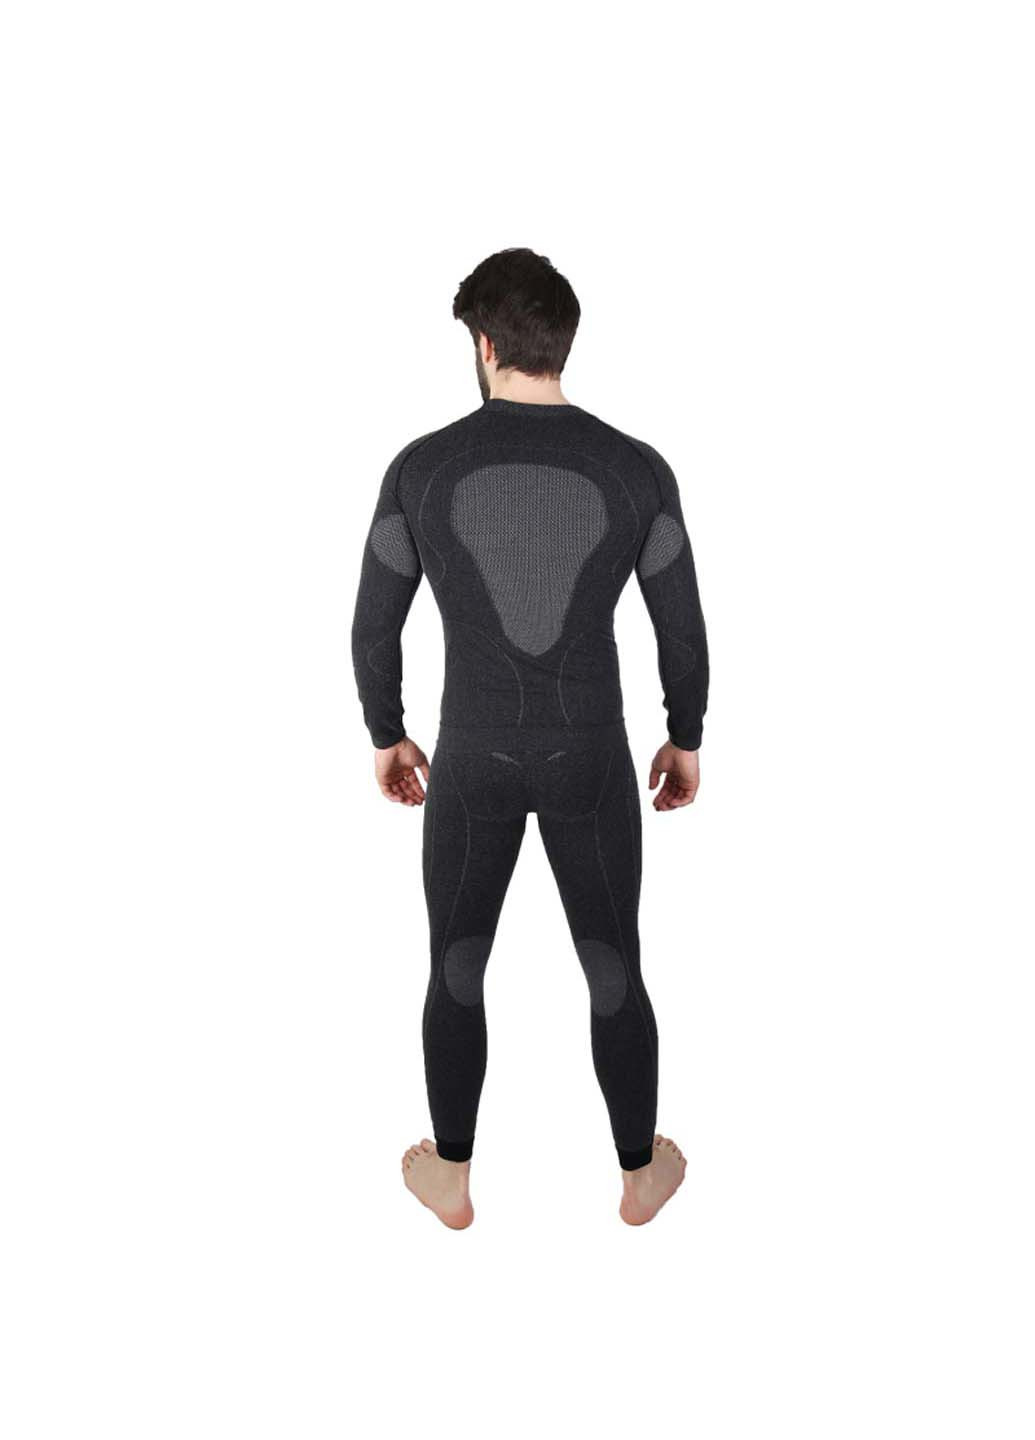 Комплект термобелья Hanna Style геометрический чёрный спортивный шерсть, полиамид